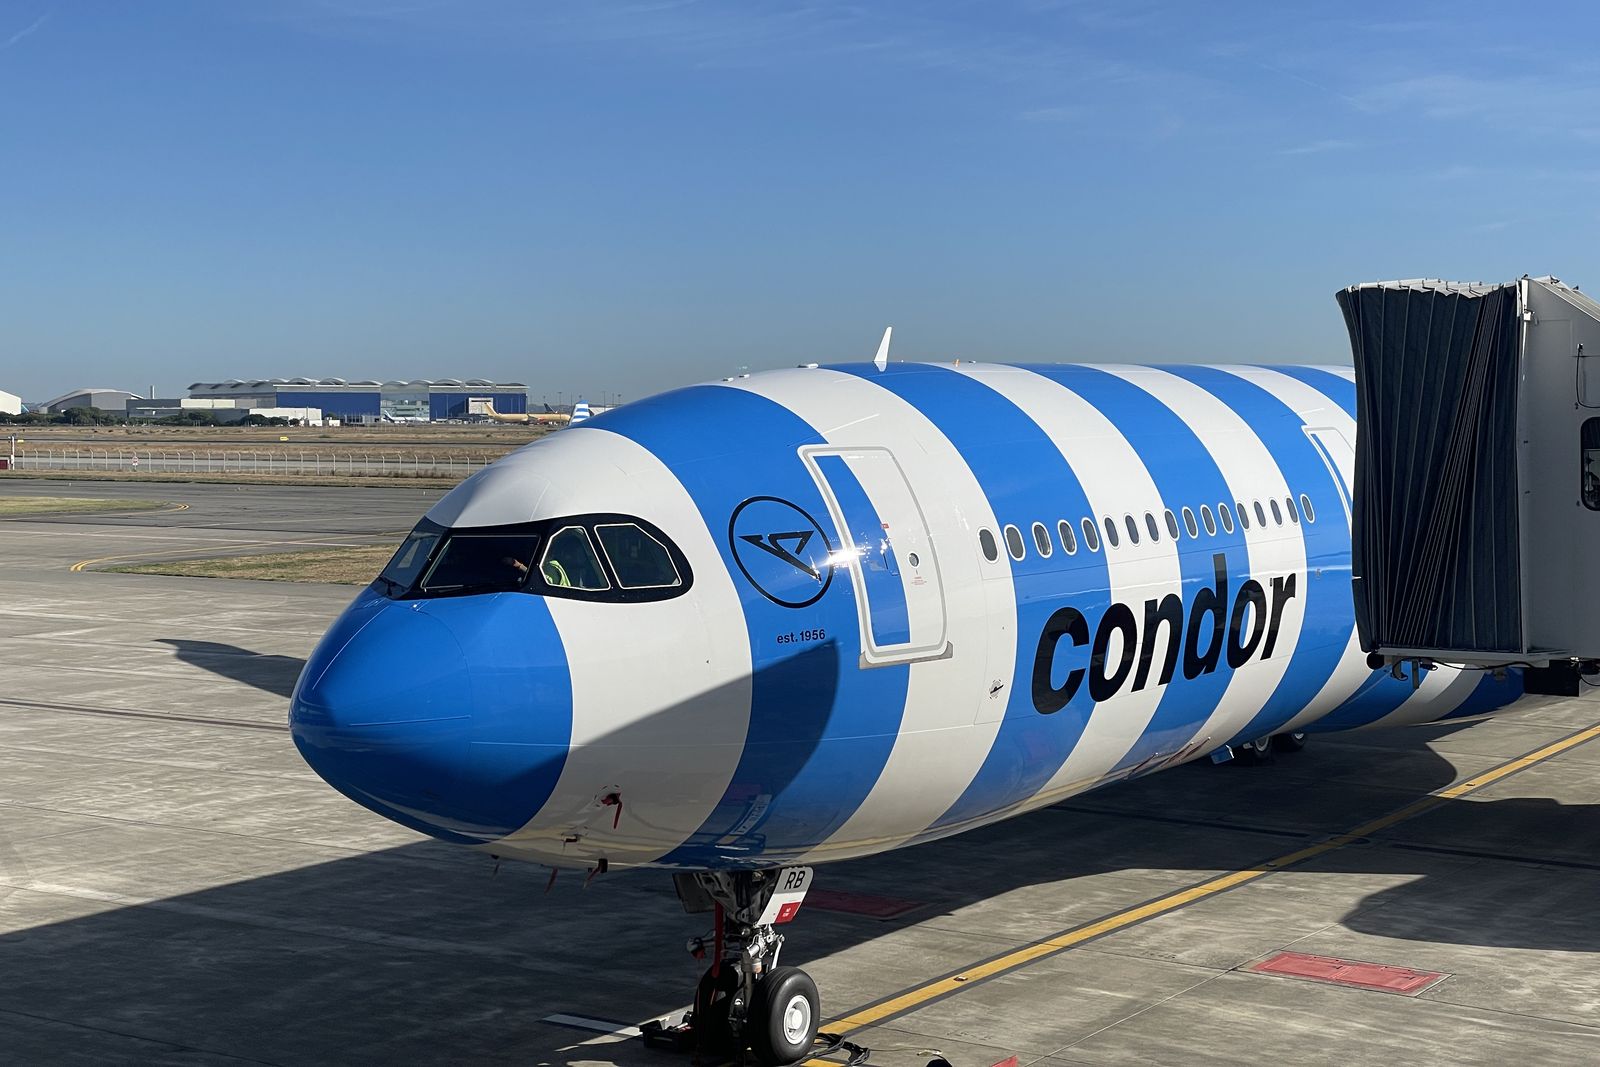 Jüngste A330neo von Condor in Frankfurt beschädigt